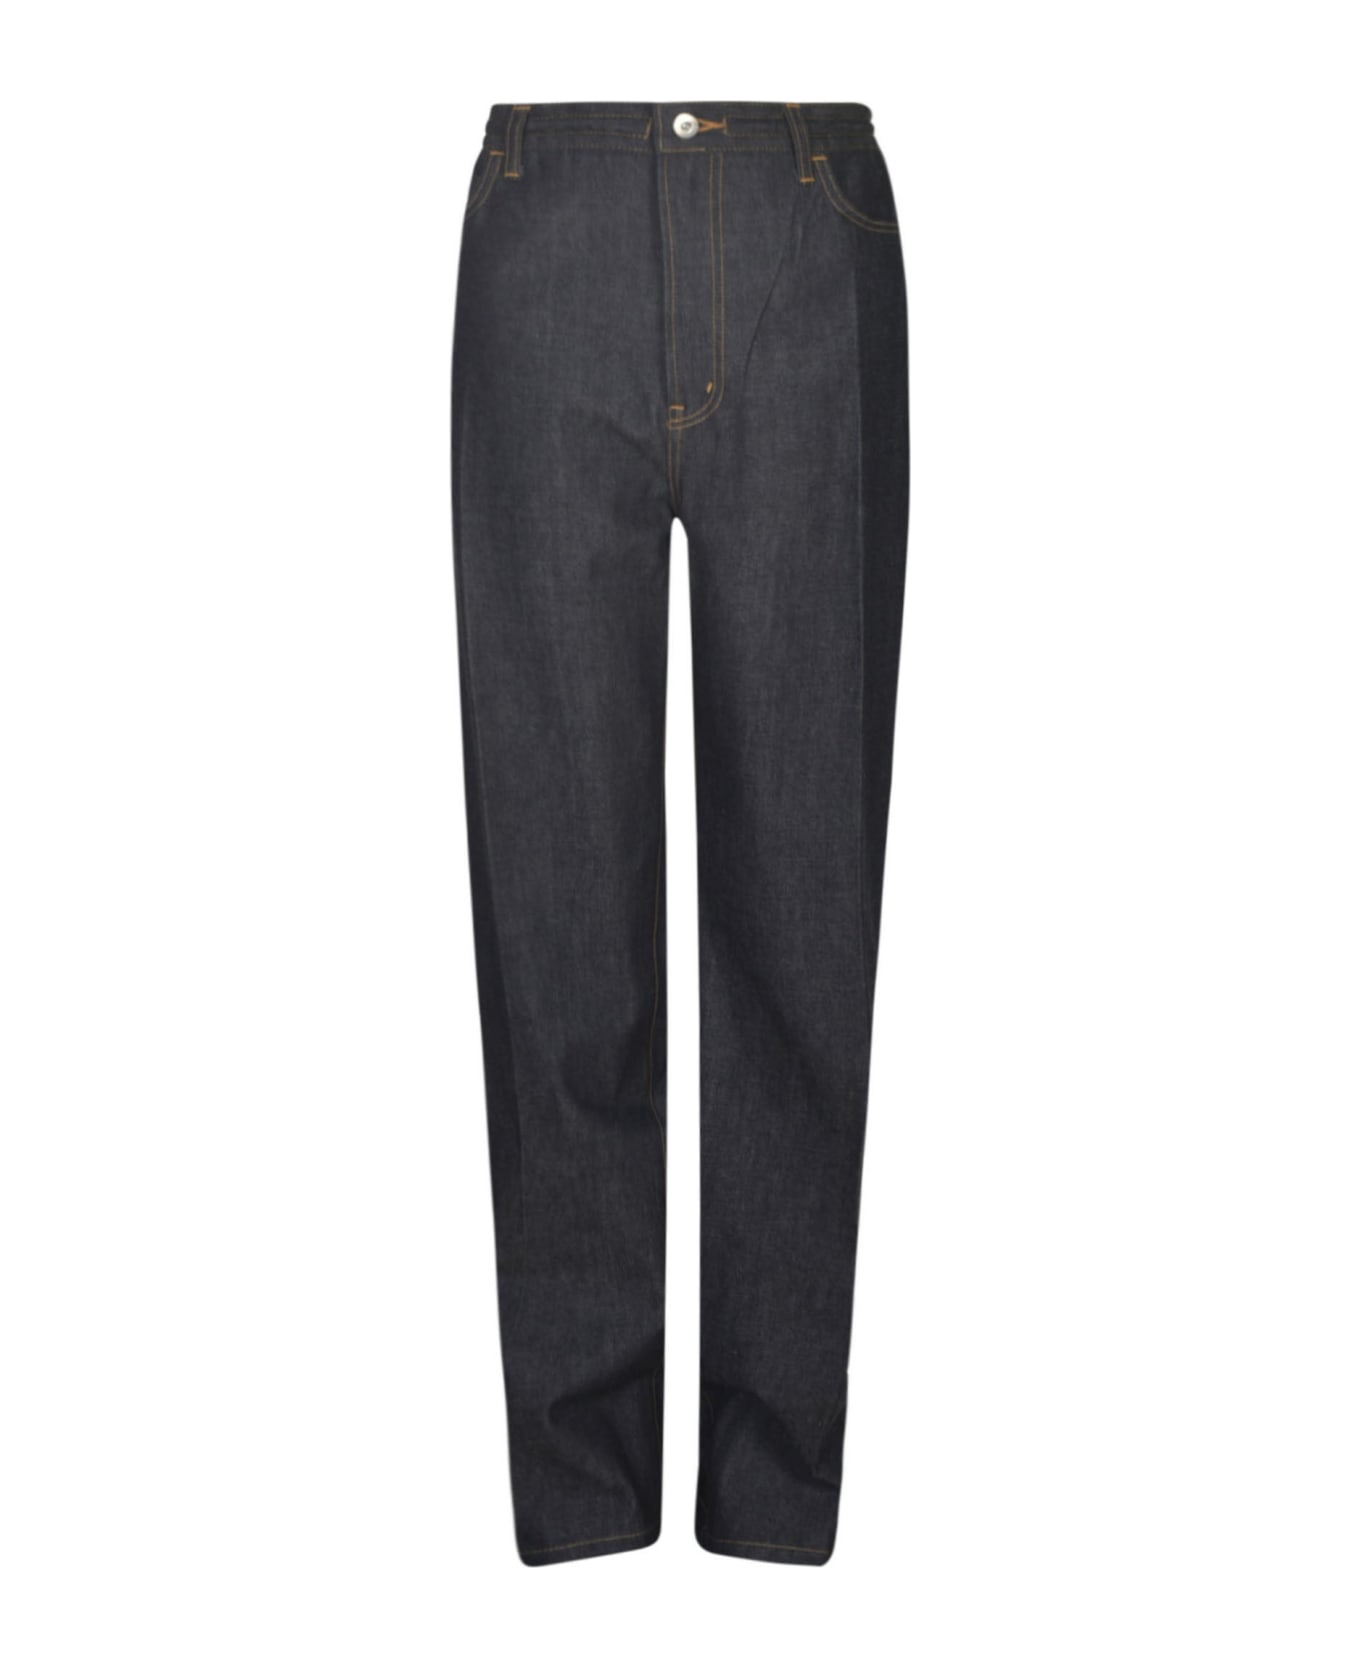 Setchu Long-length Buttoned Jeans - Indigo